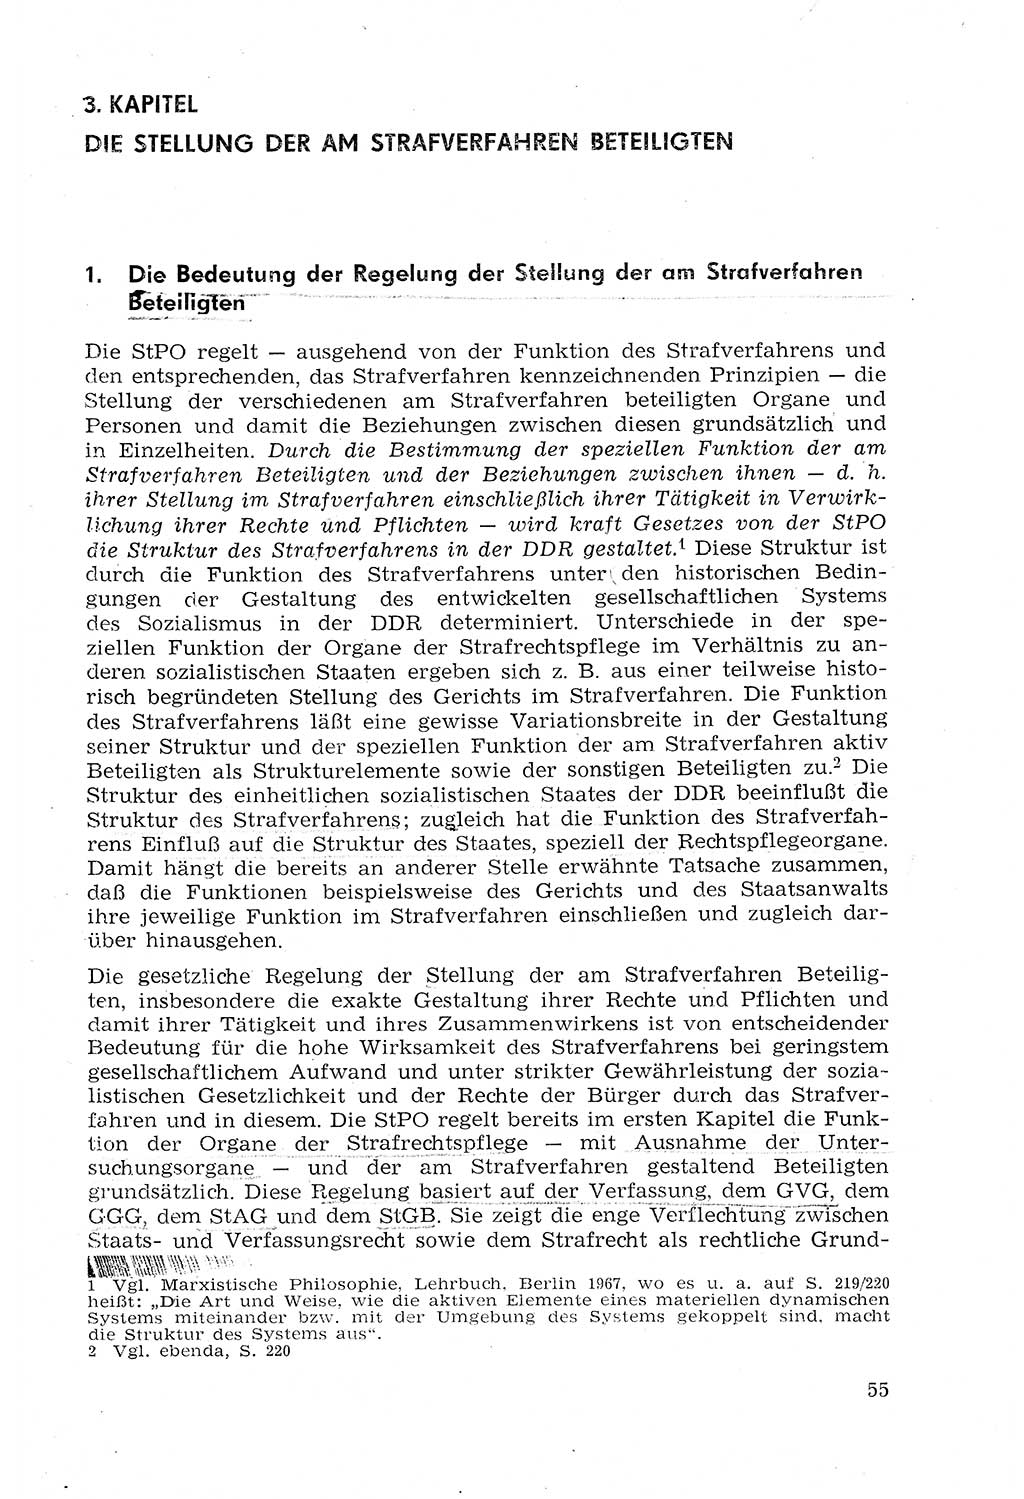 StrafprozeÃŸrecht der DDR (Deutsche Demokratische Republik), Lehrmaterial 1969, Seite 55 (StrafprozeÃŸr. DDR Lehrmat. 1969, S. 55)